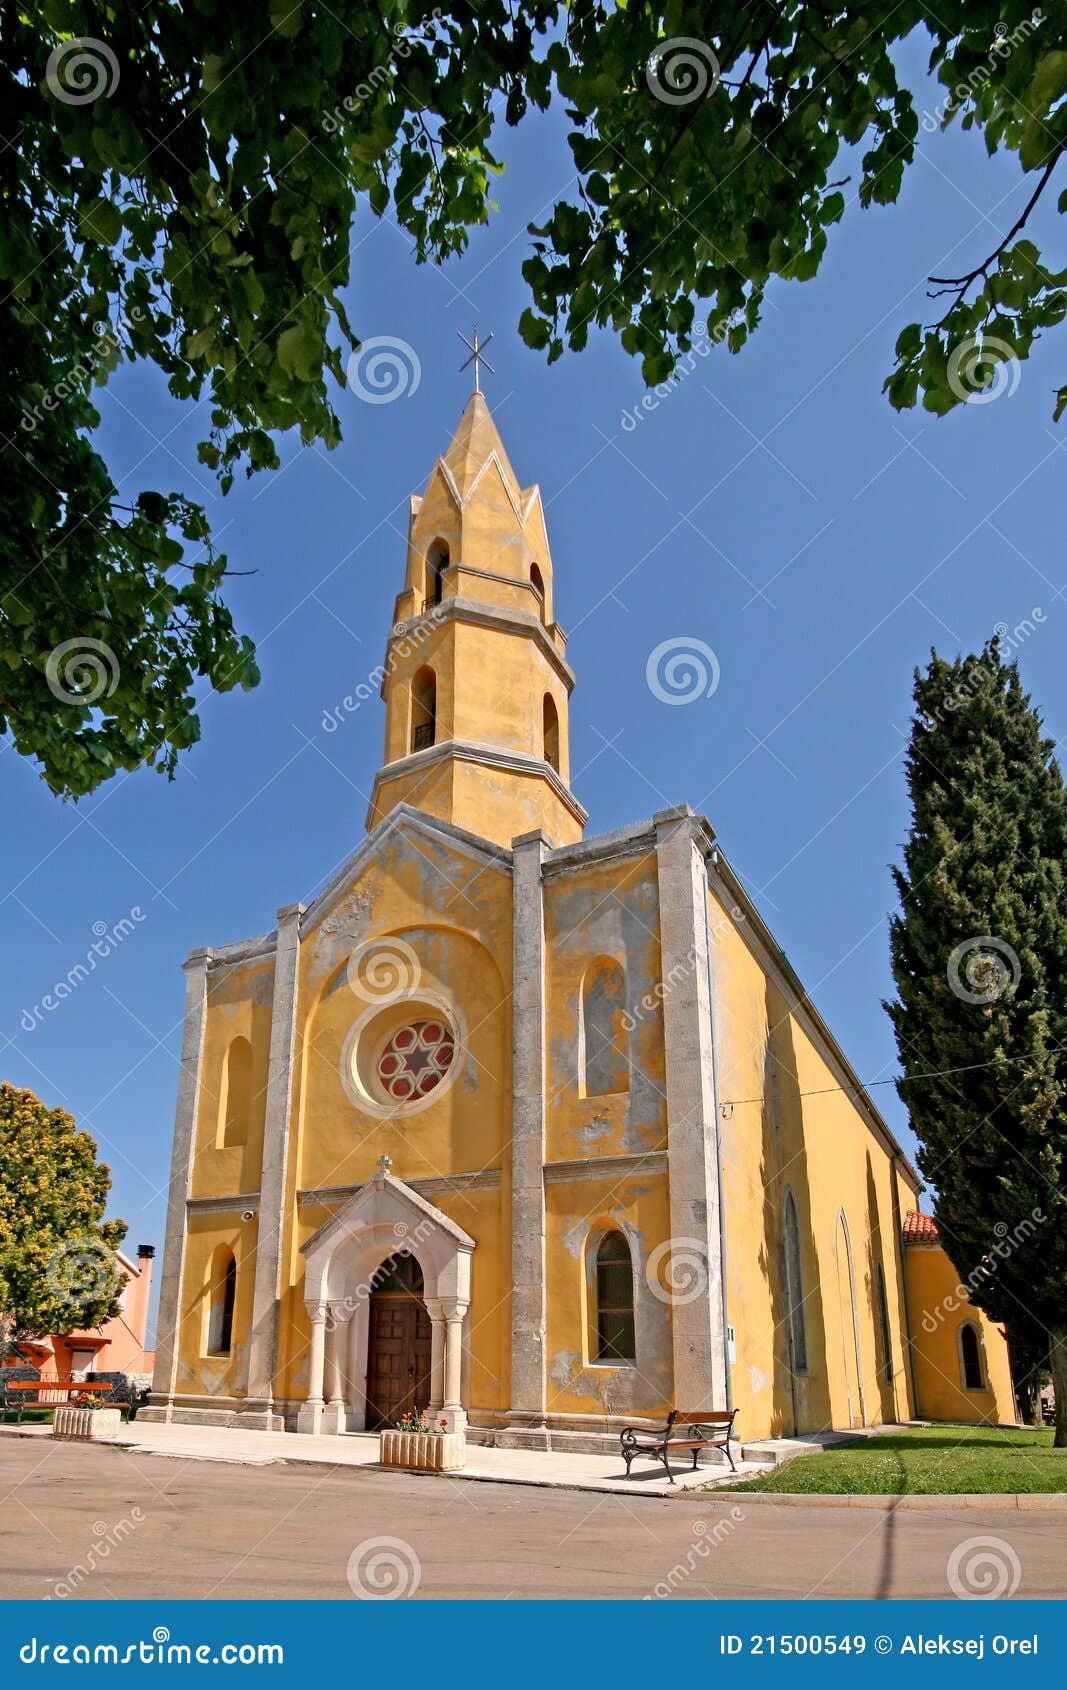 neogothic church of john the evangelist in valtura